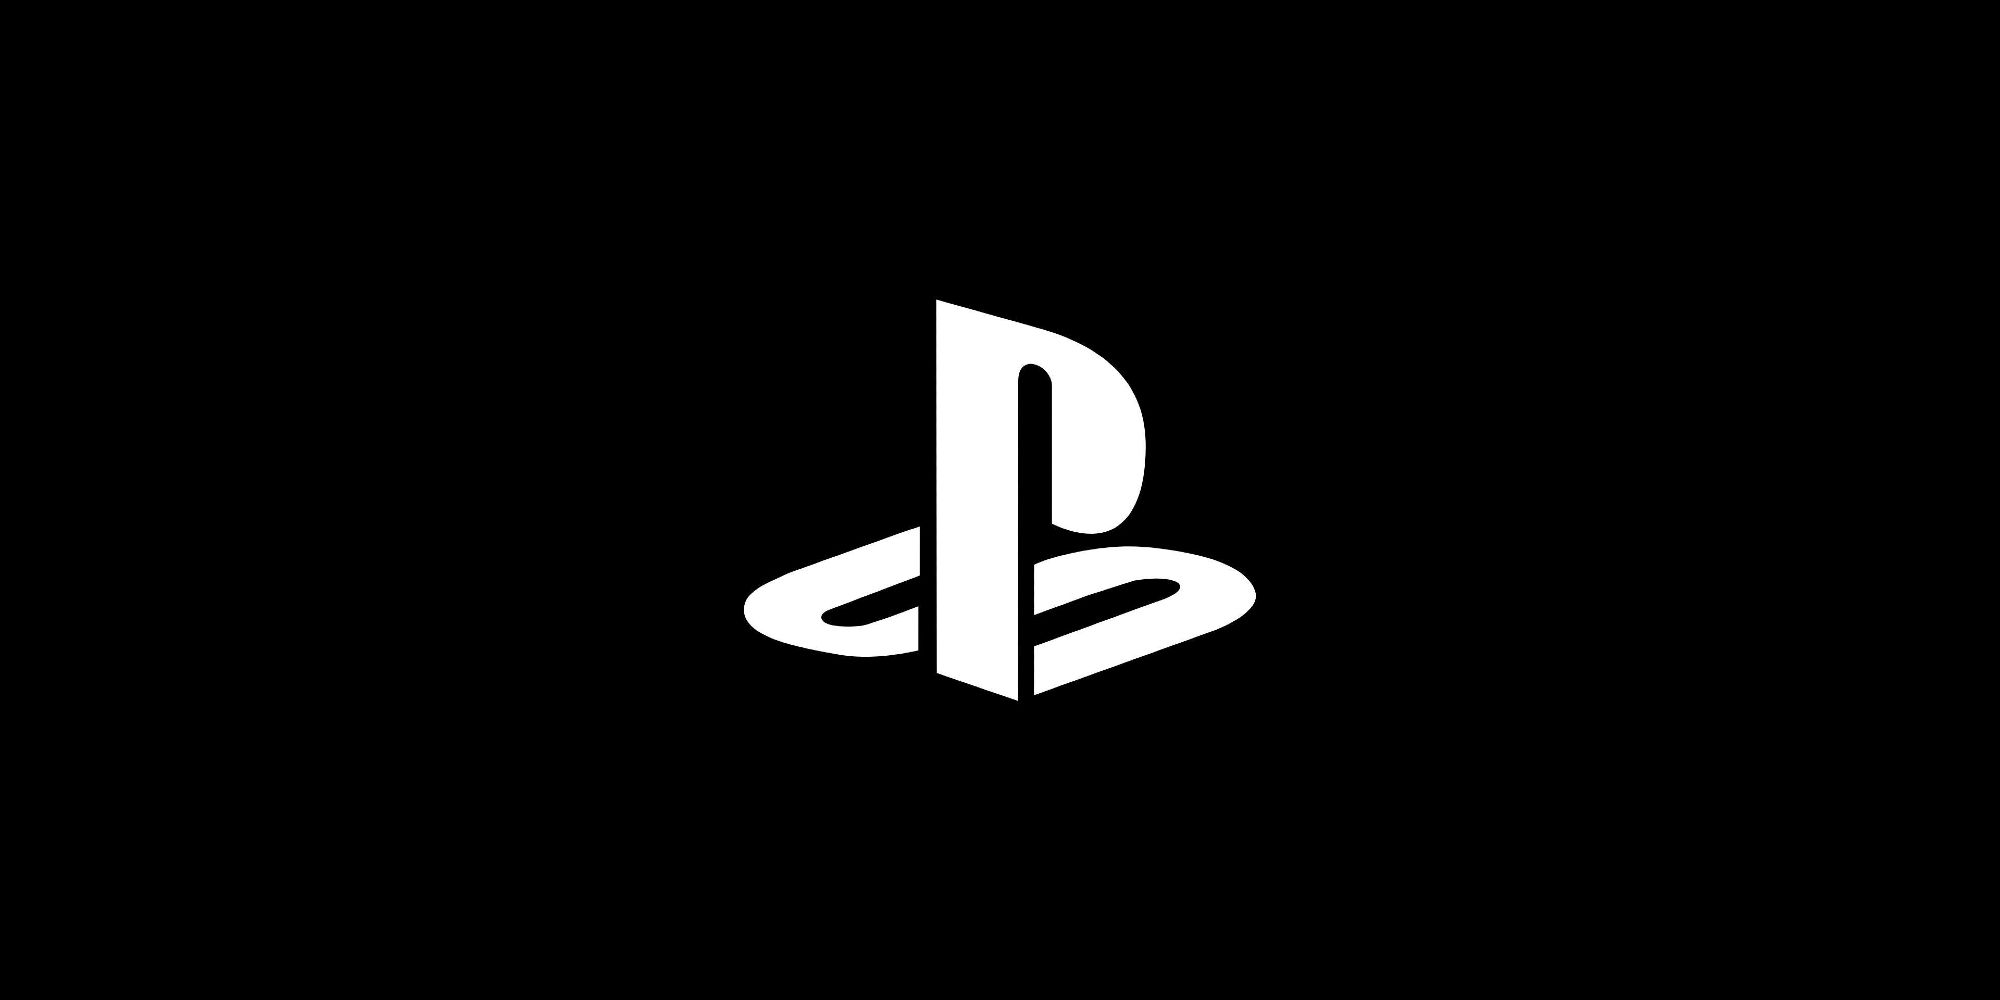 PlayStation-Roe-v-Wade.jpg